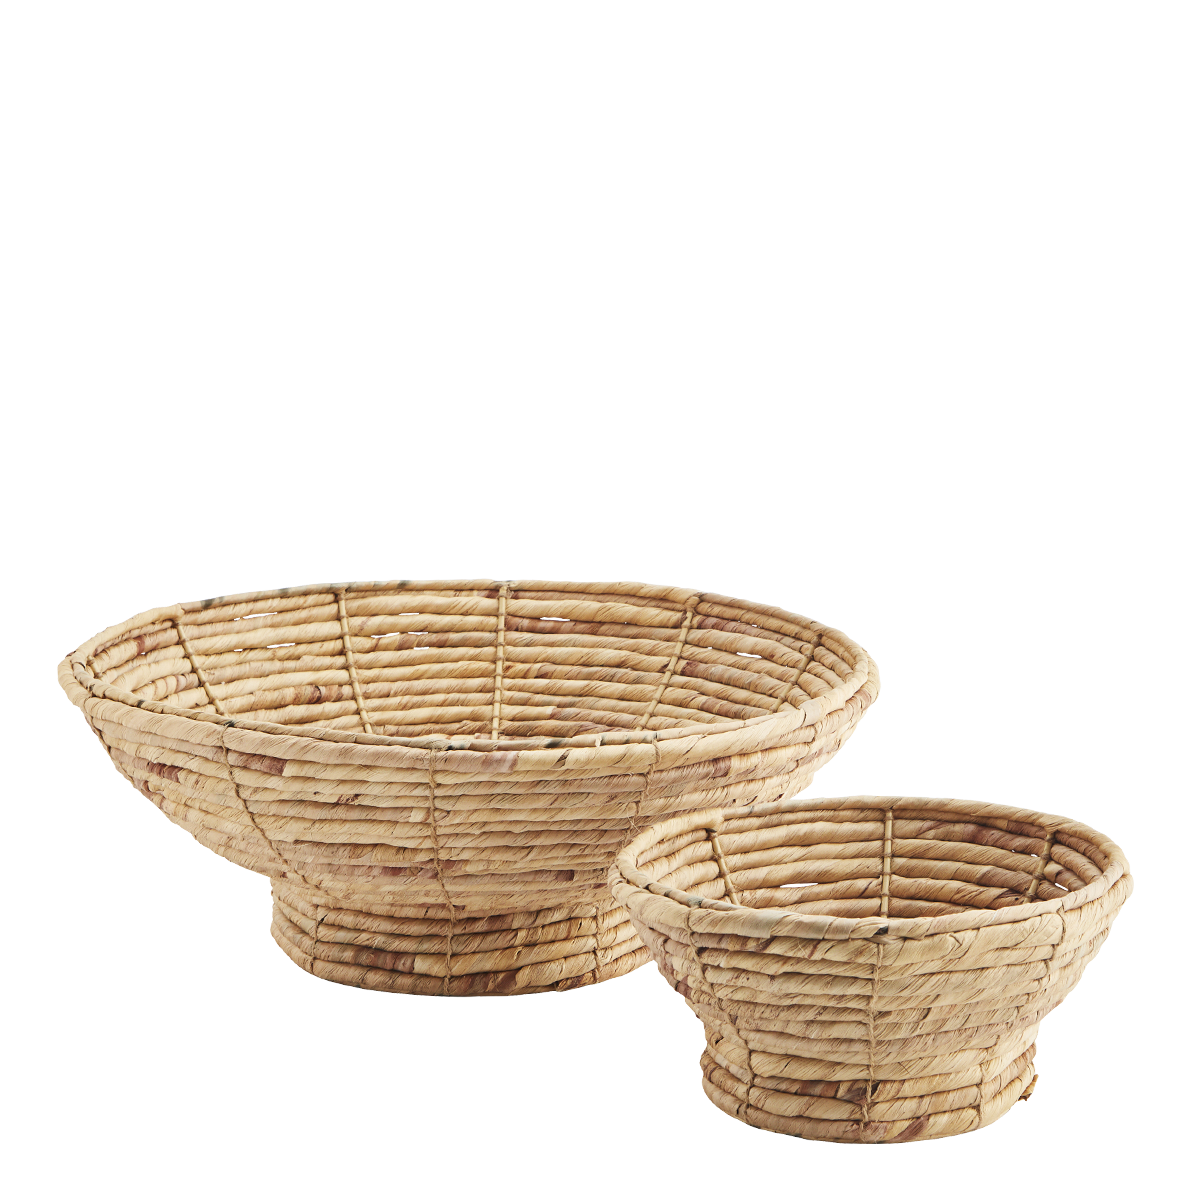 Water hyacinth bowls